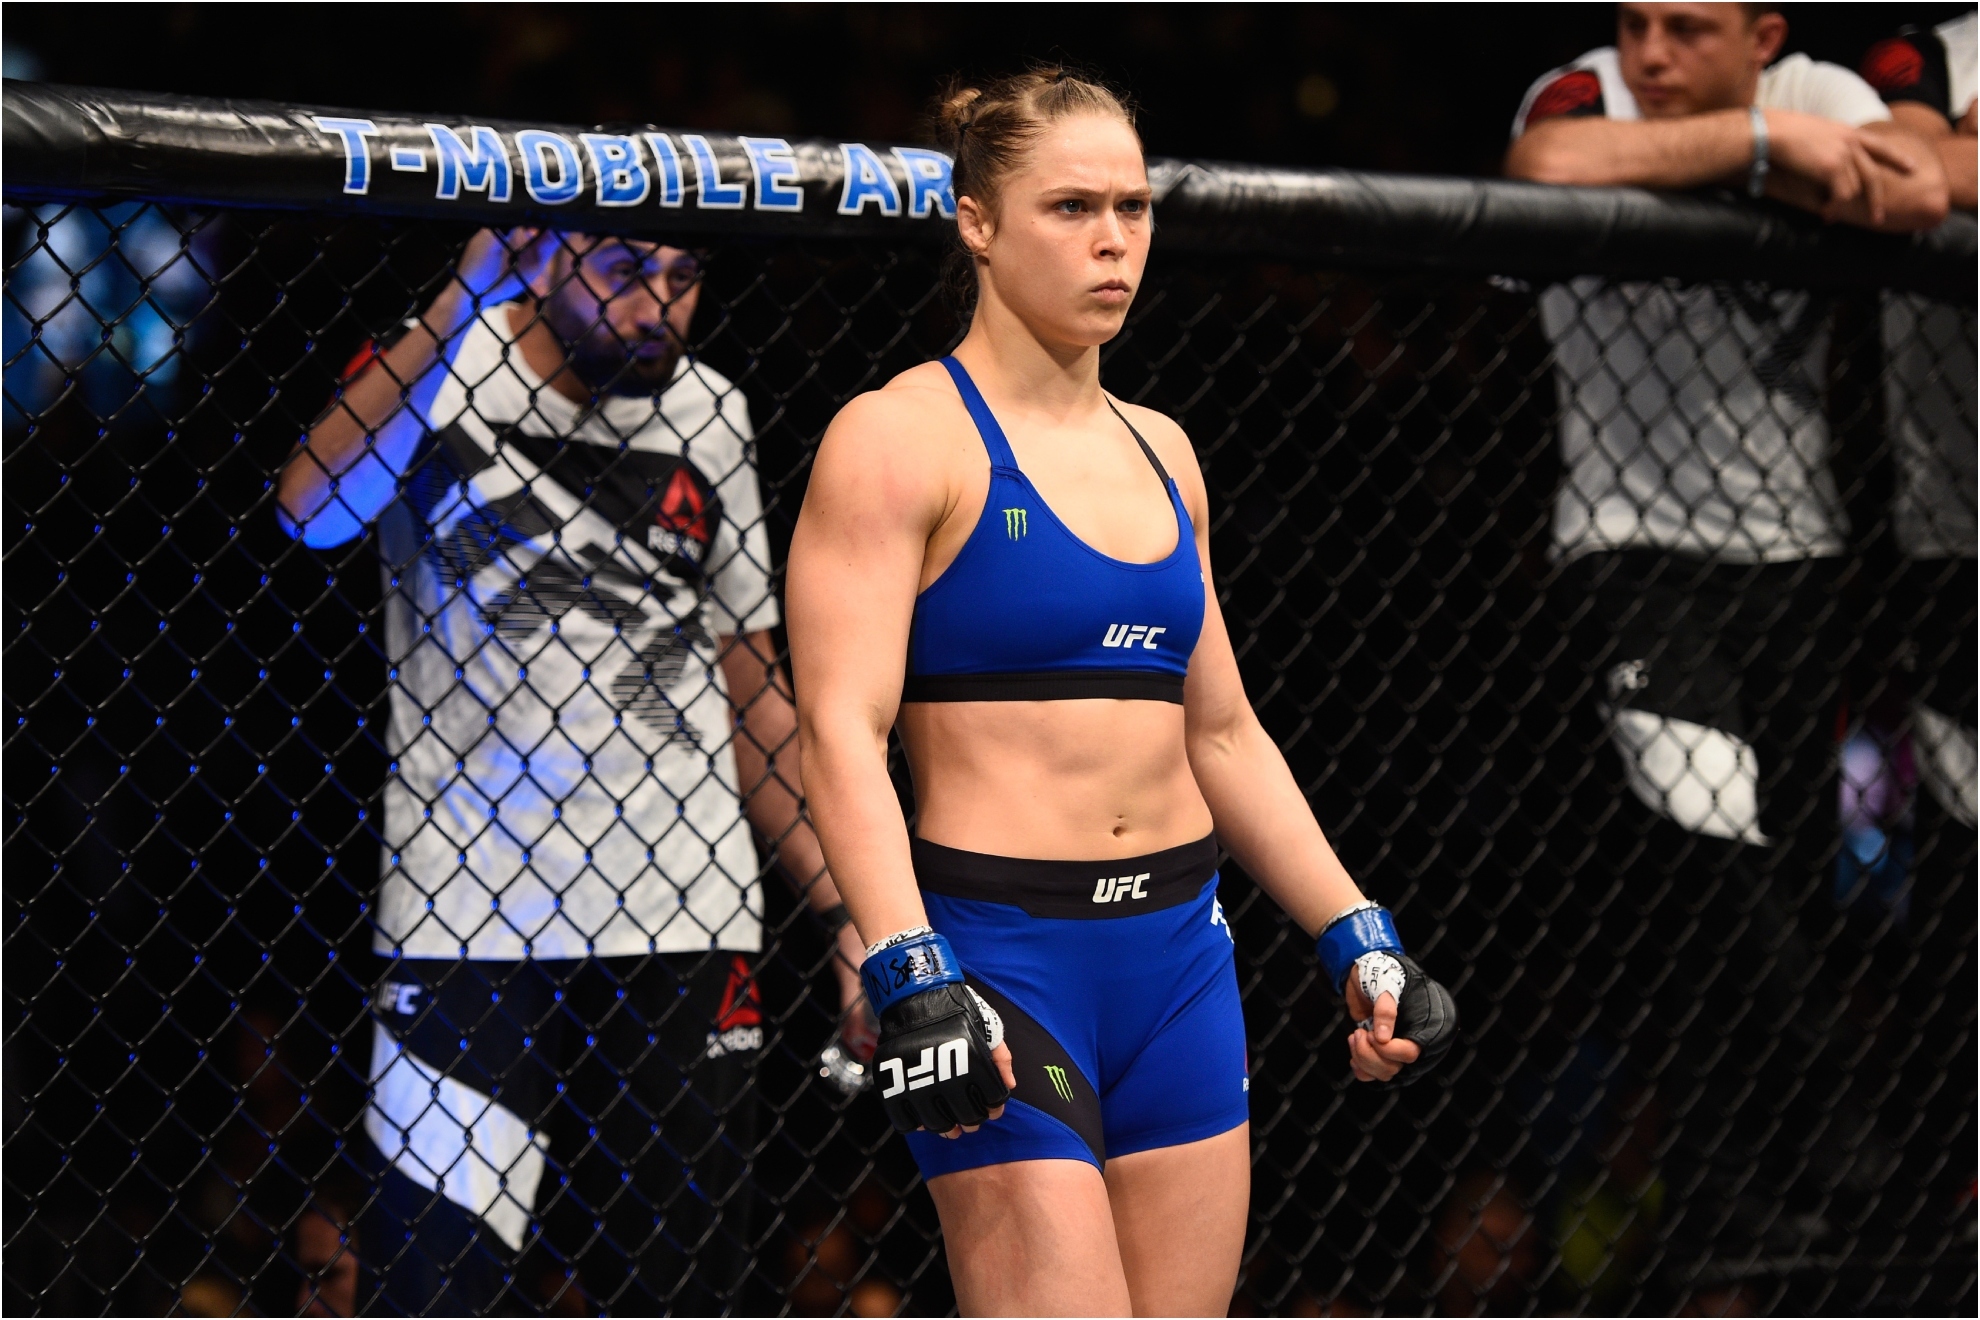 Ronda Rousey against Amanda Nunes in 2016 in the UFC